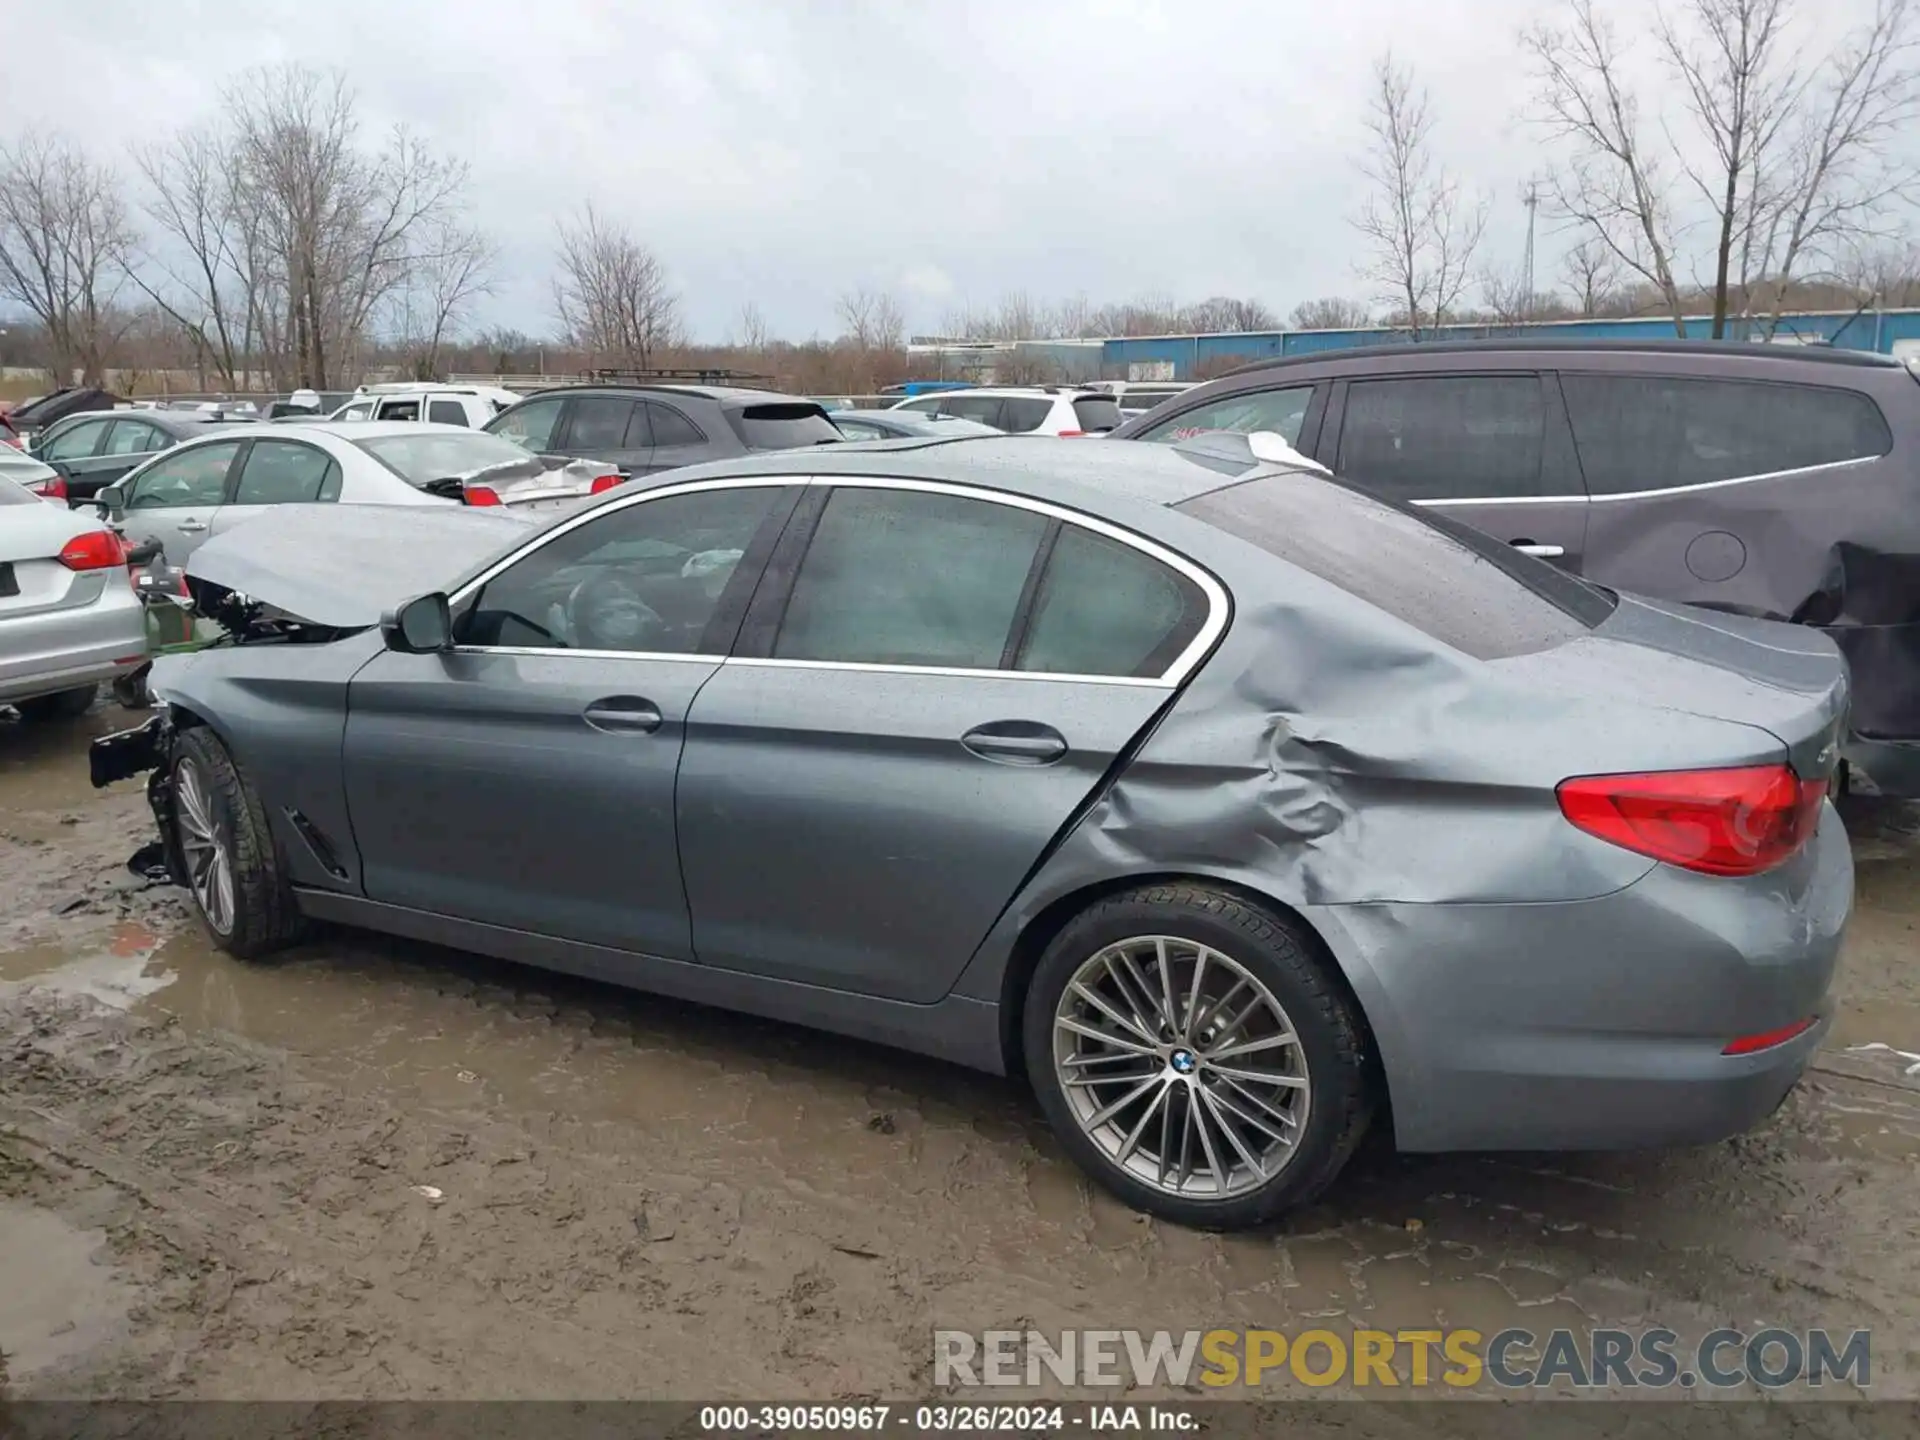 13 Photograph of a damaged car WBAJR7C09LWW77741 BMW 530I 2020